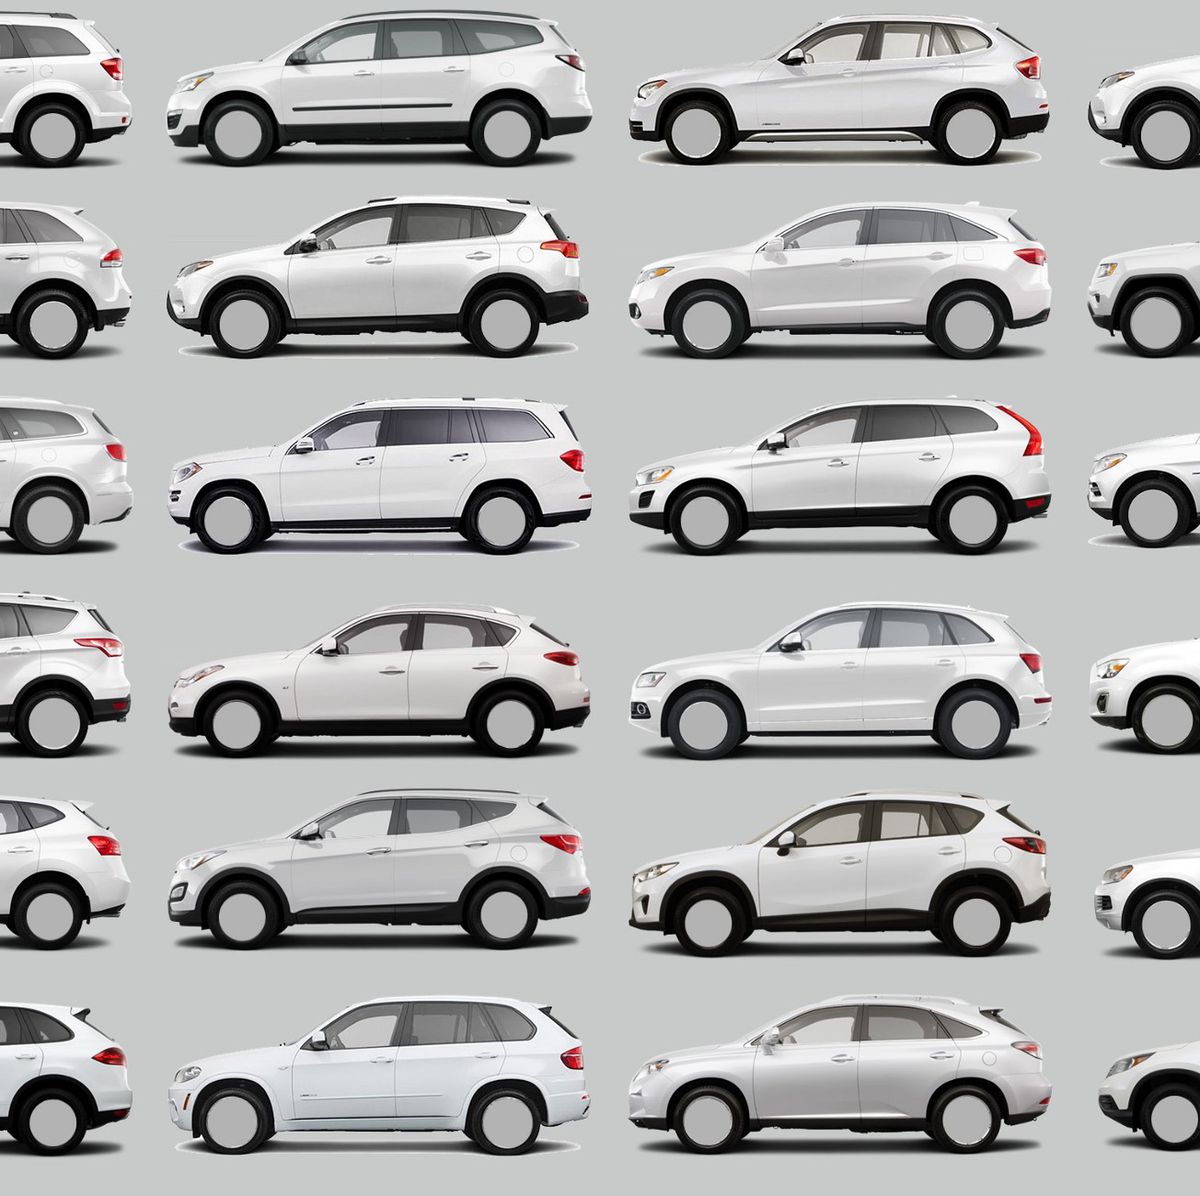 Car comparisons. Машины которые выглядят одинаково. All cars. Машина блендинг. Автомобили похожие на животных.